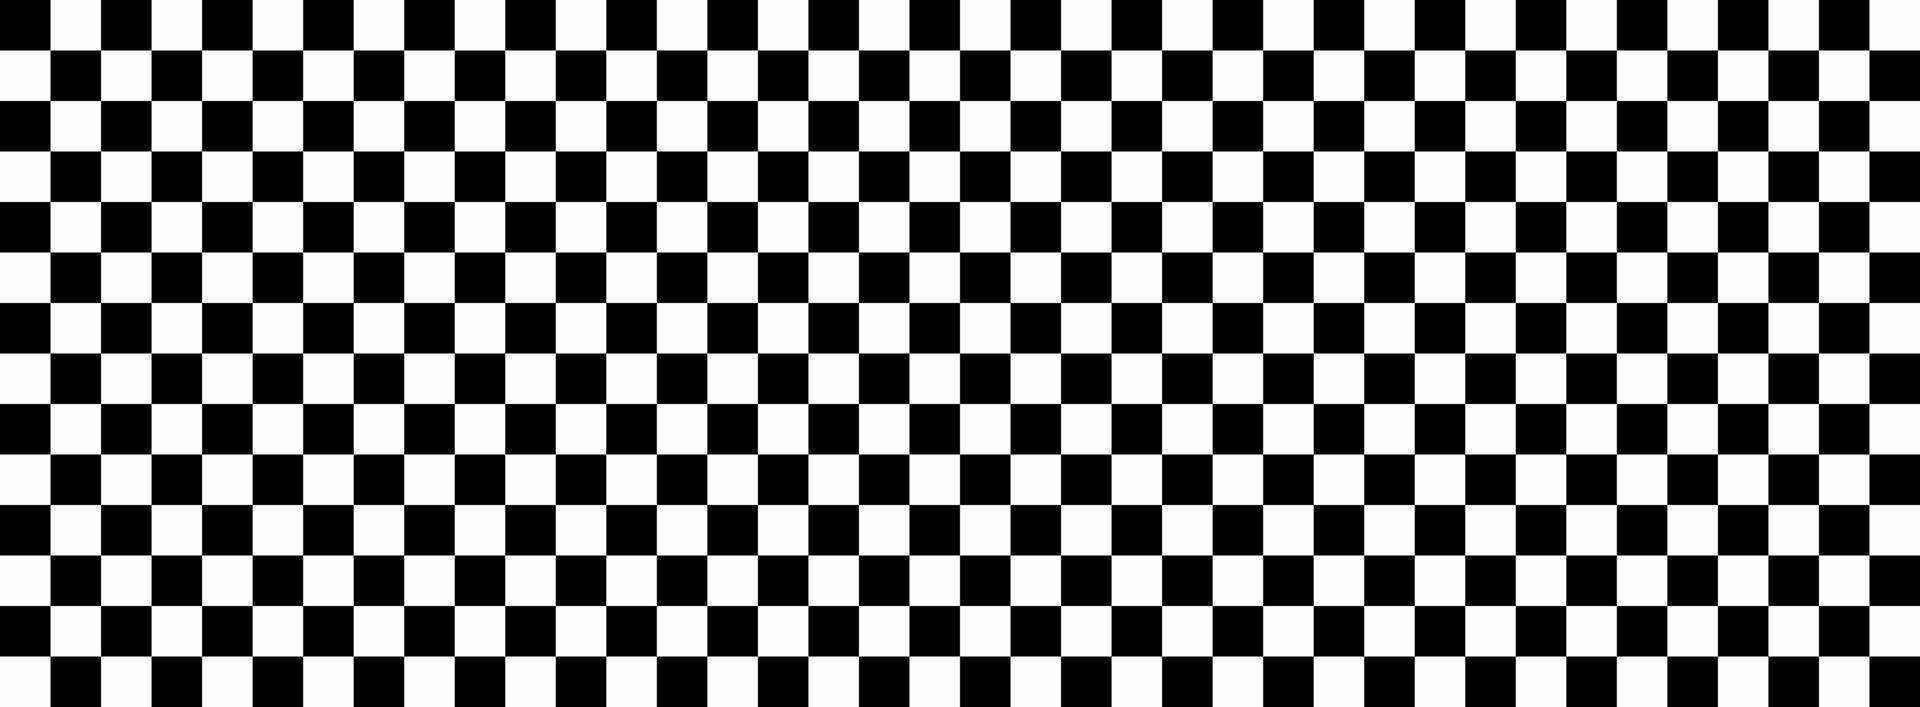 tablero de ajedrez horizontal a cuadros blanco y negro textura repetible. cuadros anchos vector